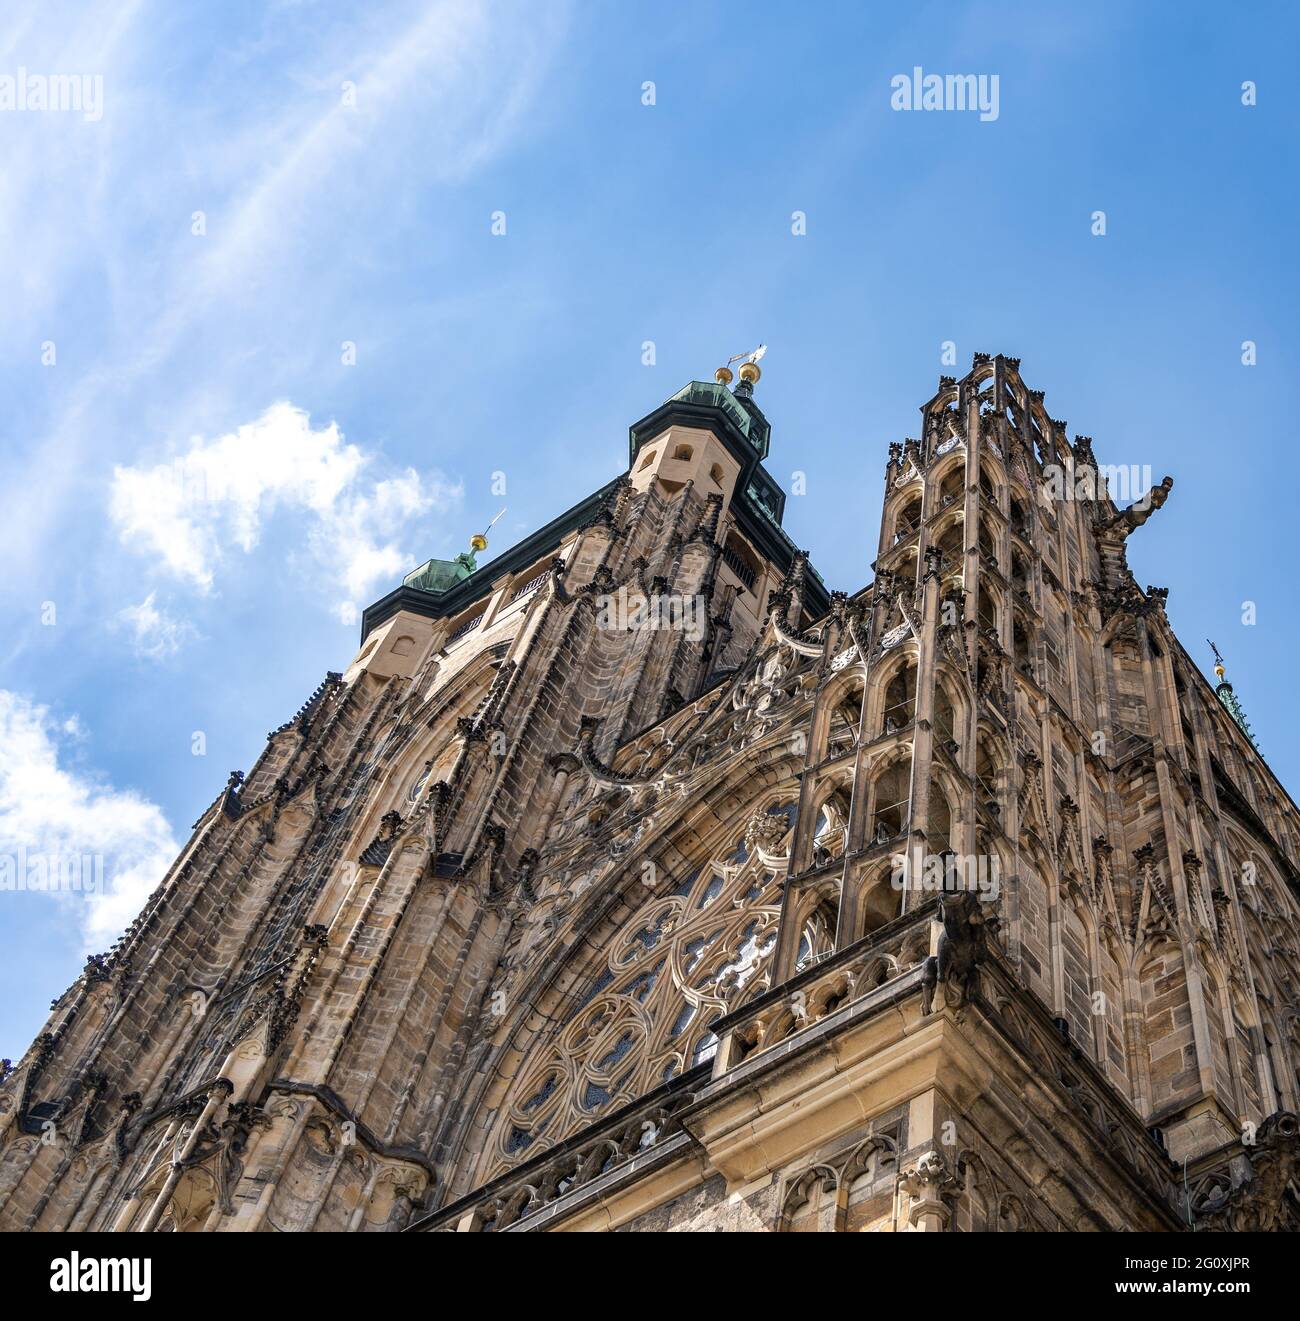 St Vitus Cathedral, Prague castle, Czech Republic Stock Photo